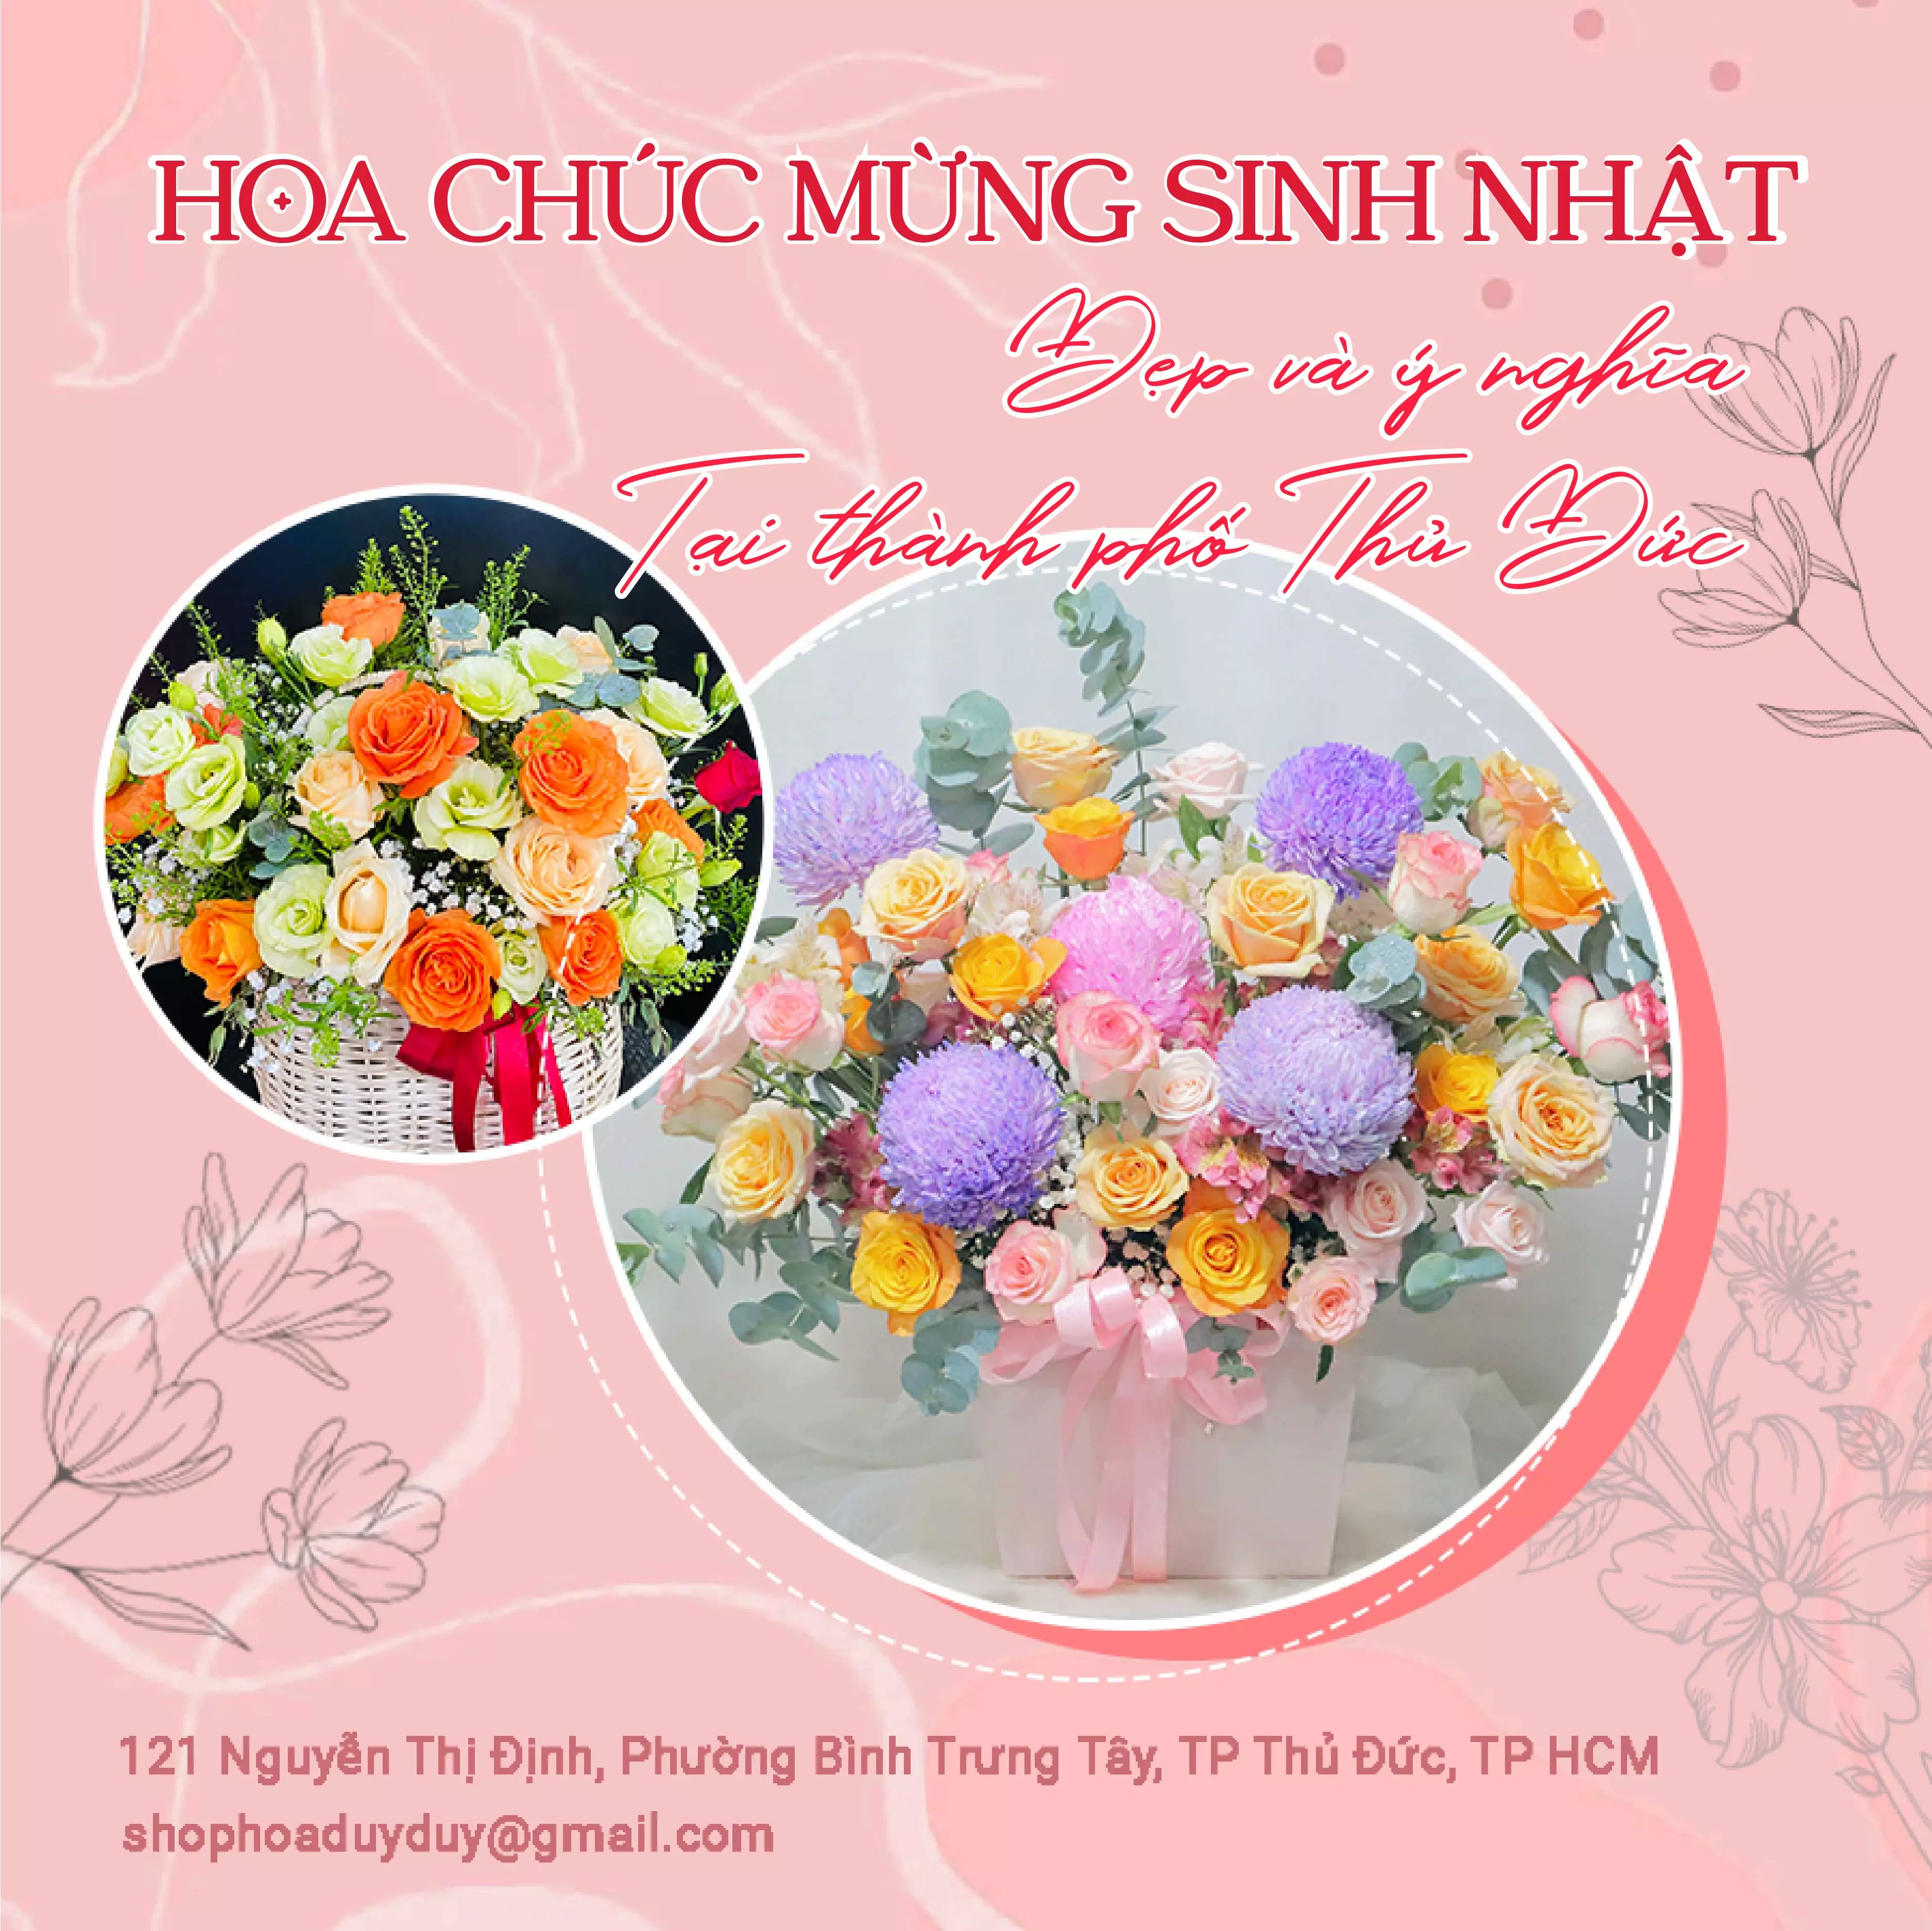 Lẵng hoa chúc mừng sinh nhật mang phong cách hiện đại tại Cầu Giấy  Hoa  khai trương  Hoa khai trương đẹp ở Hà Nội